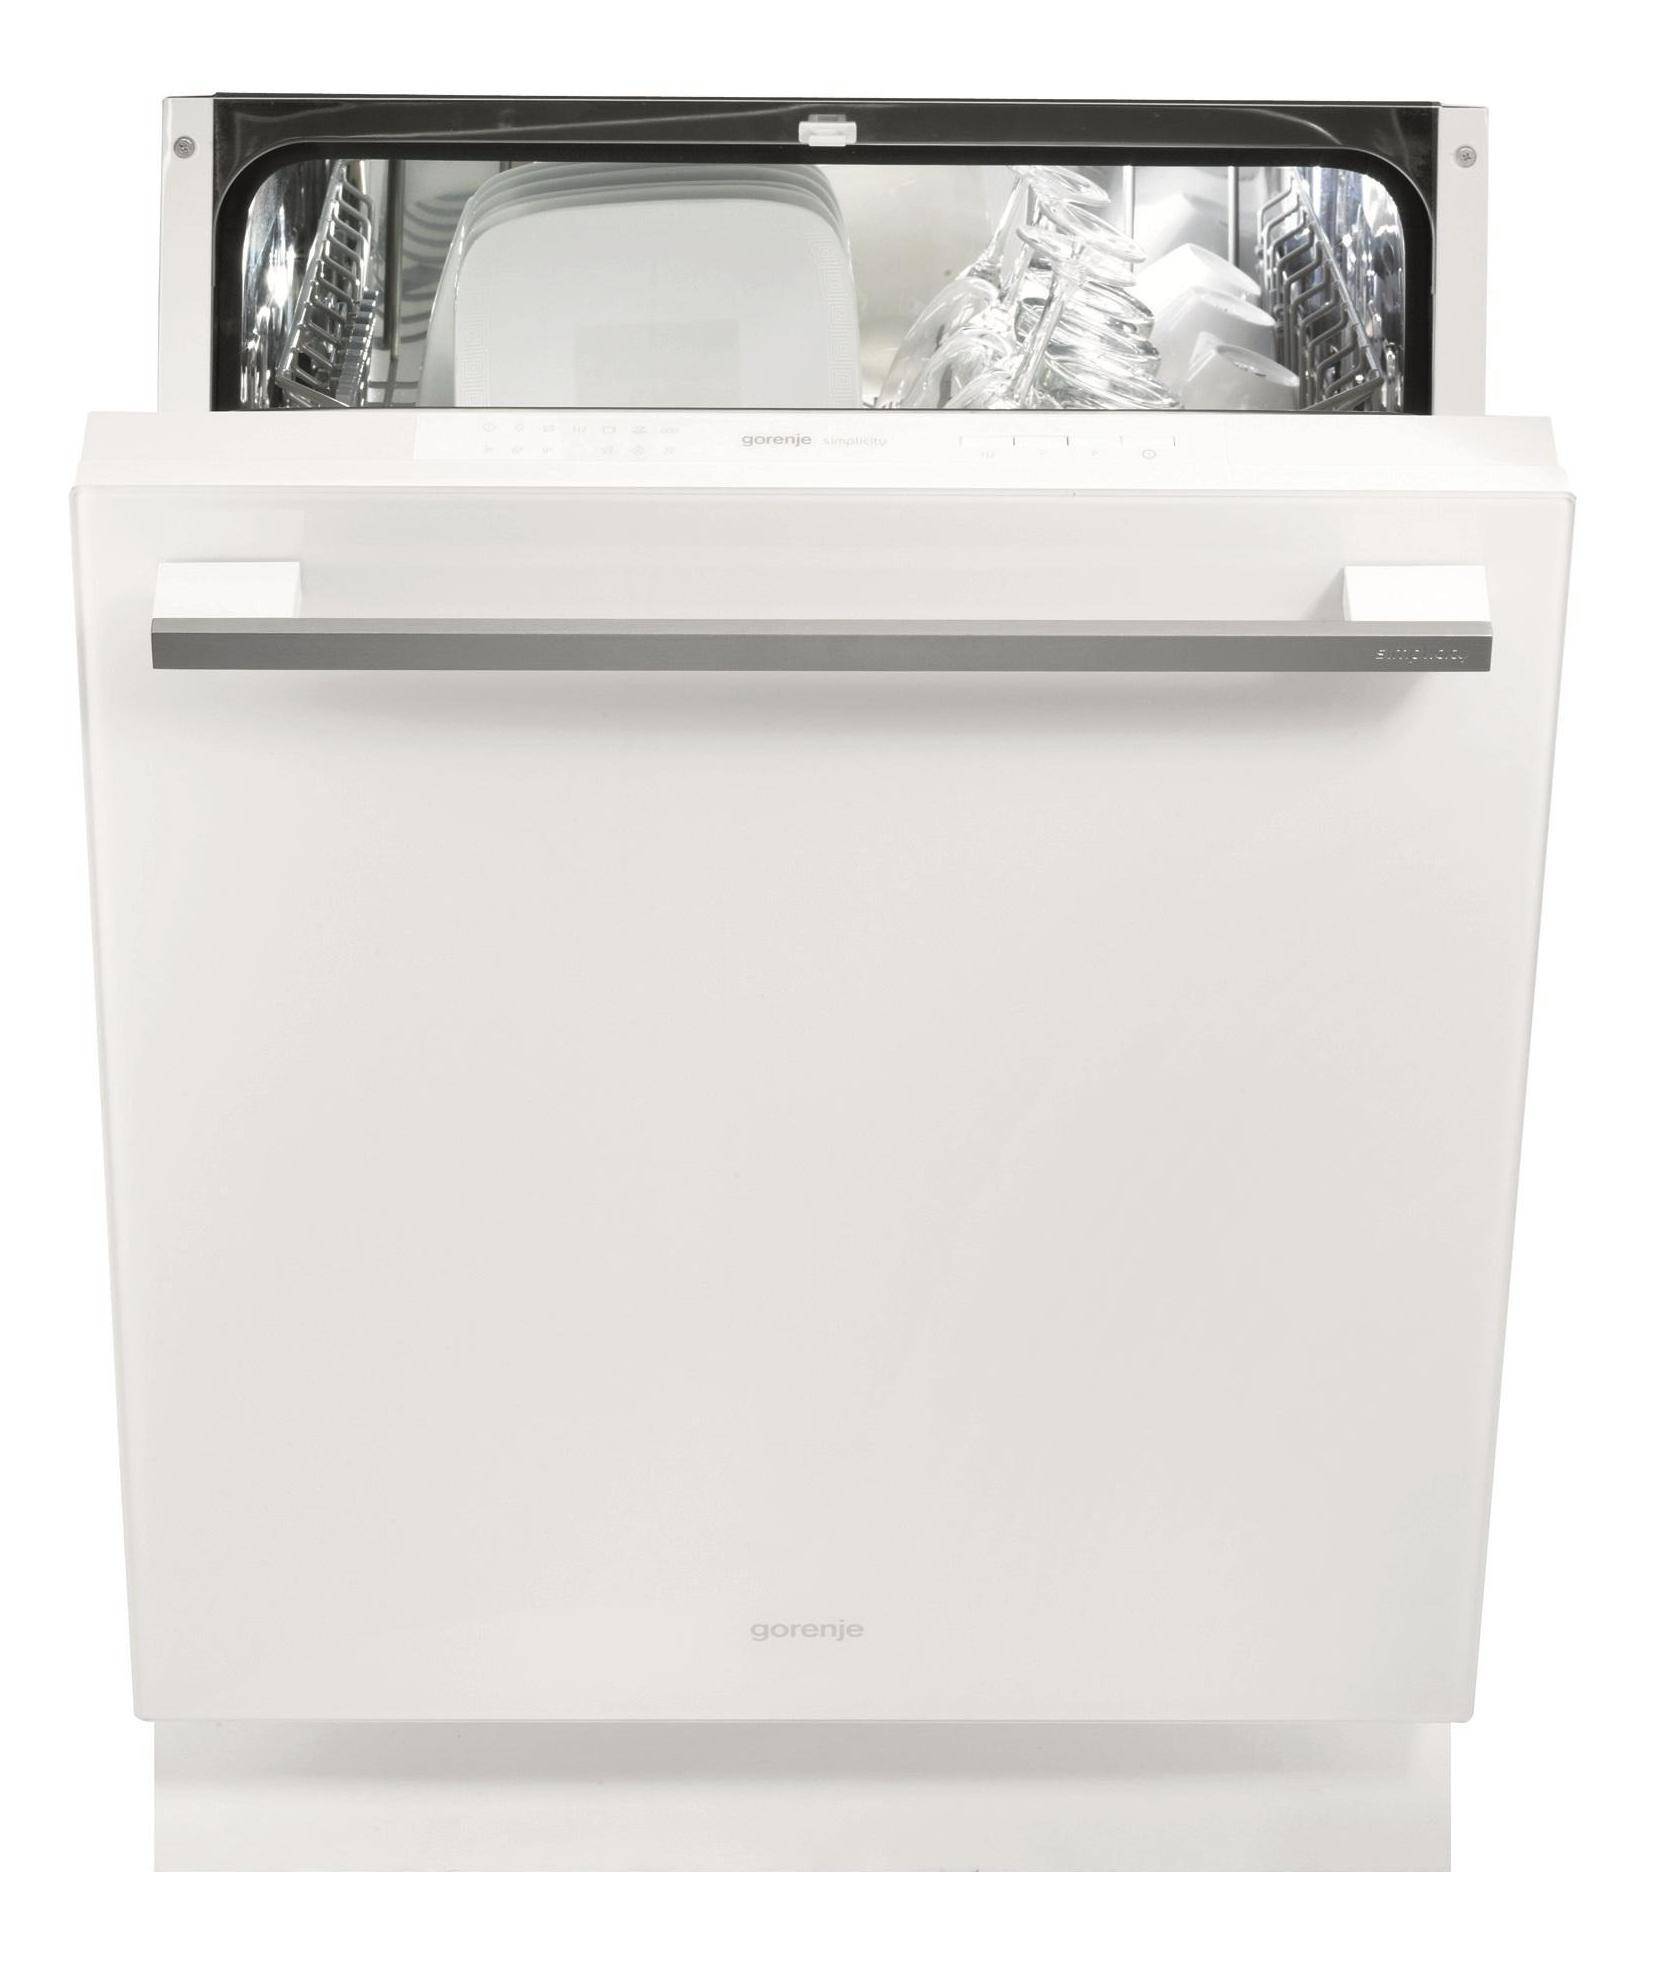 Встроенная посудомоечная машина 60 см горенье. Встраиваемая посудомоечная машина Gorenje gv6sy2w. Gorenje gv663c60. Посудомоечная машина Gorenje simplicity gv6sy2w. Посудомоечная машина горение 60 см отдельностоящая.